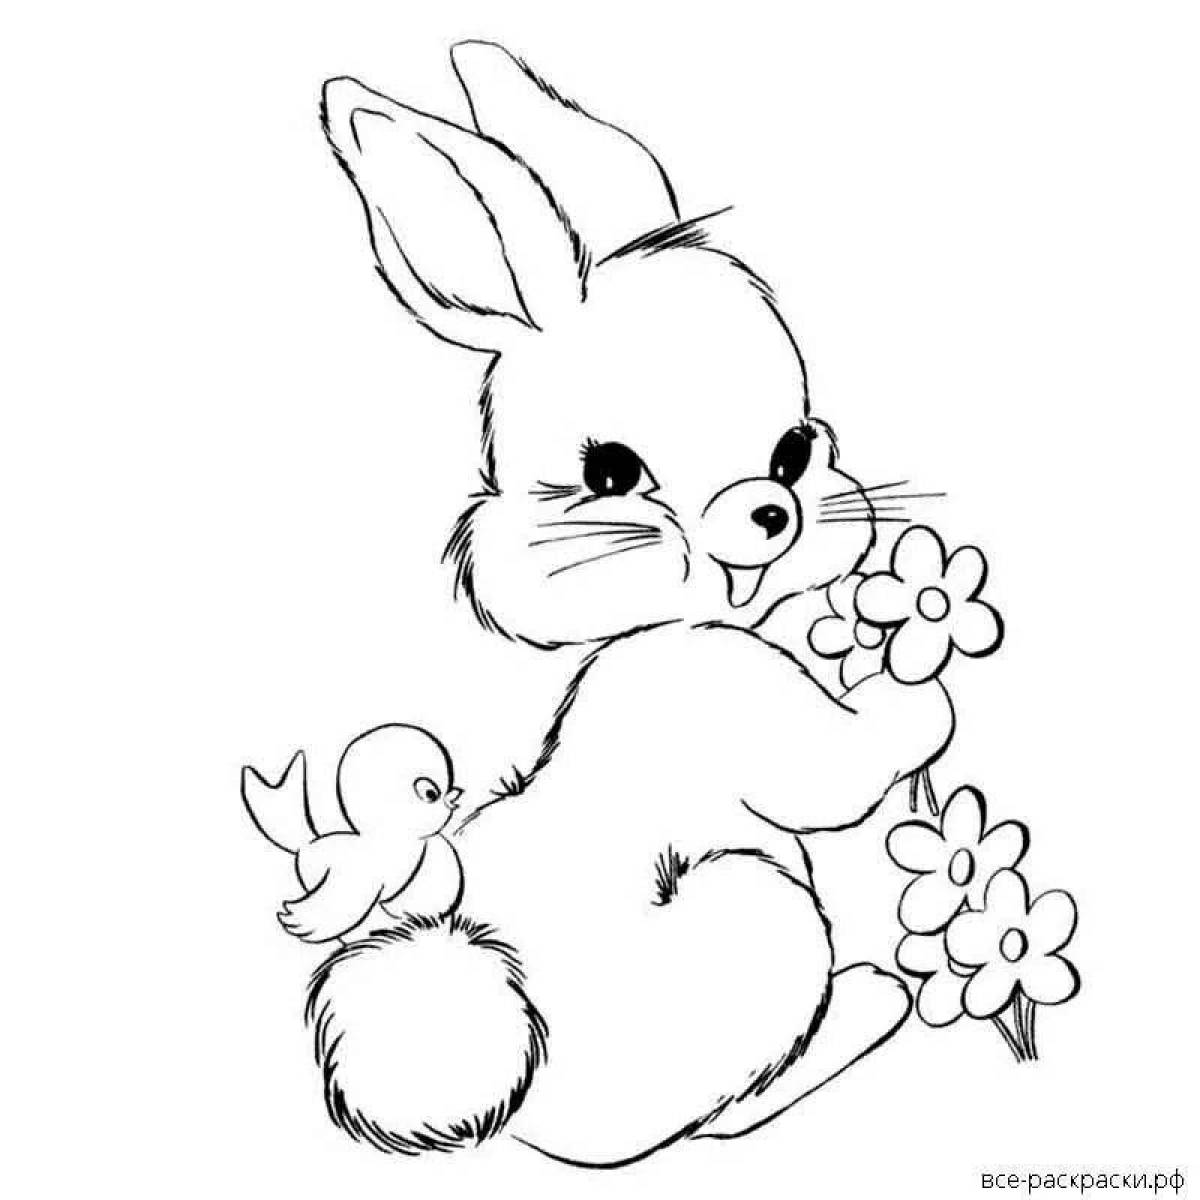 Cozy bunny coloring book